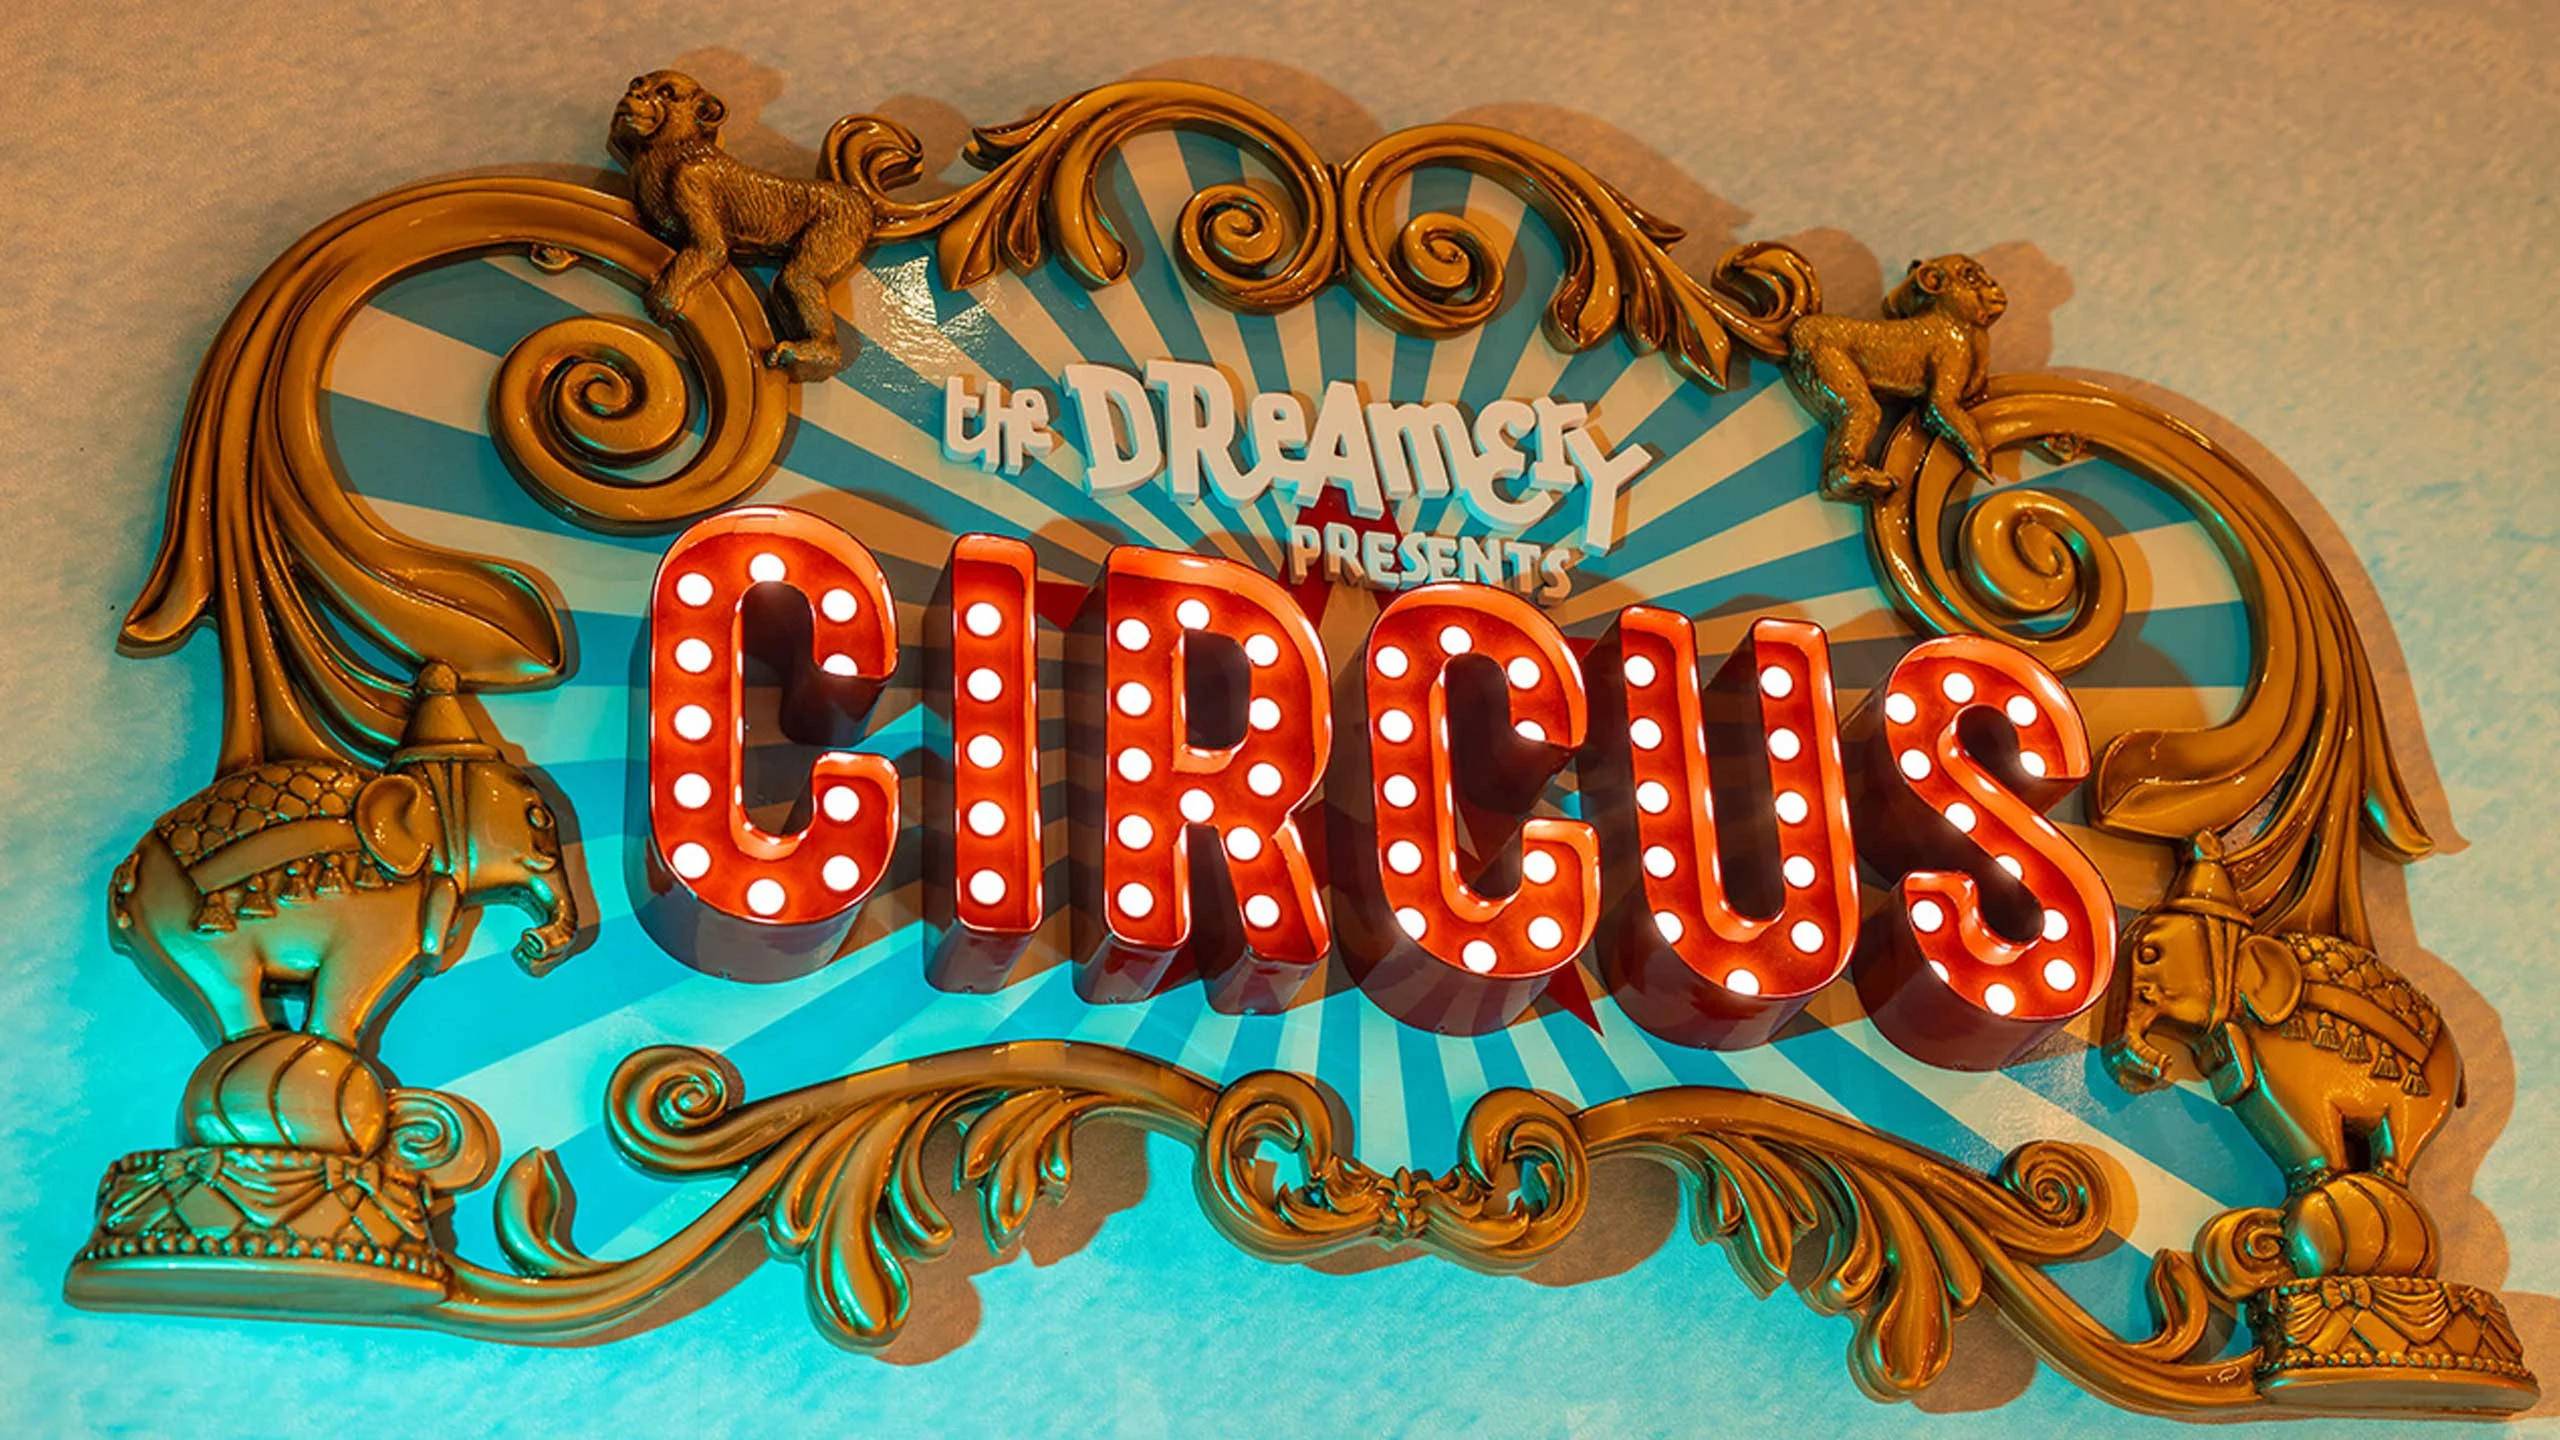 Moon Palace The Grand-Cancún presenta “Circus”, un nuevo concepto familiar